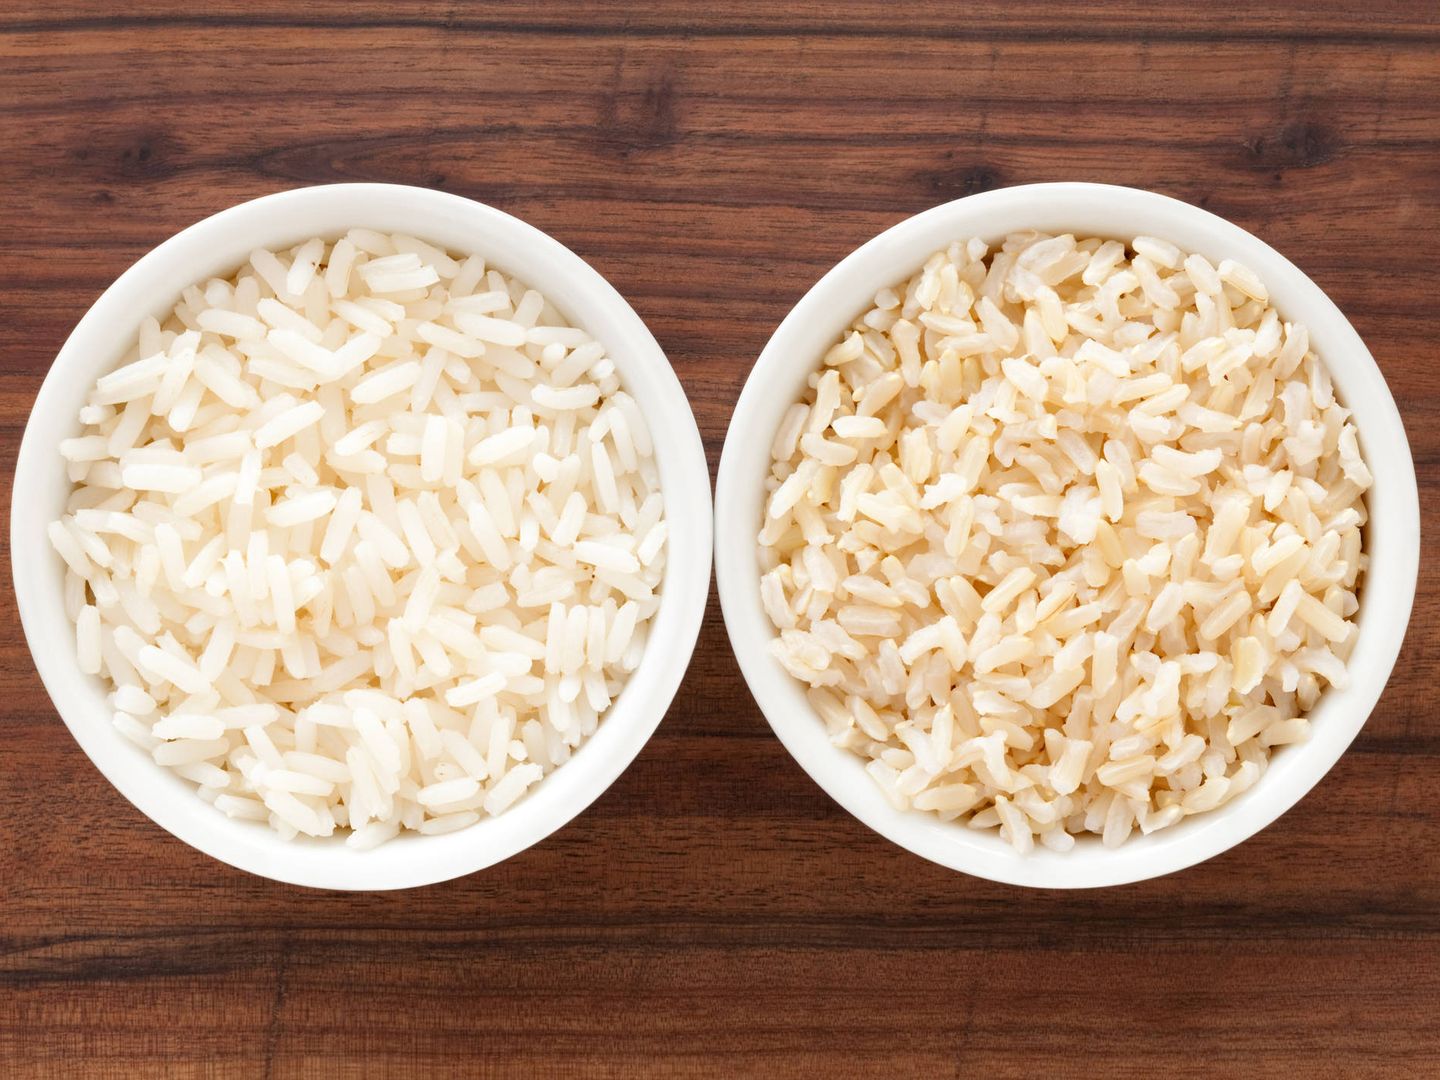 El arroz, mejor de grano largo. (iStock)